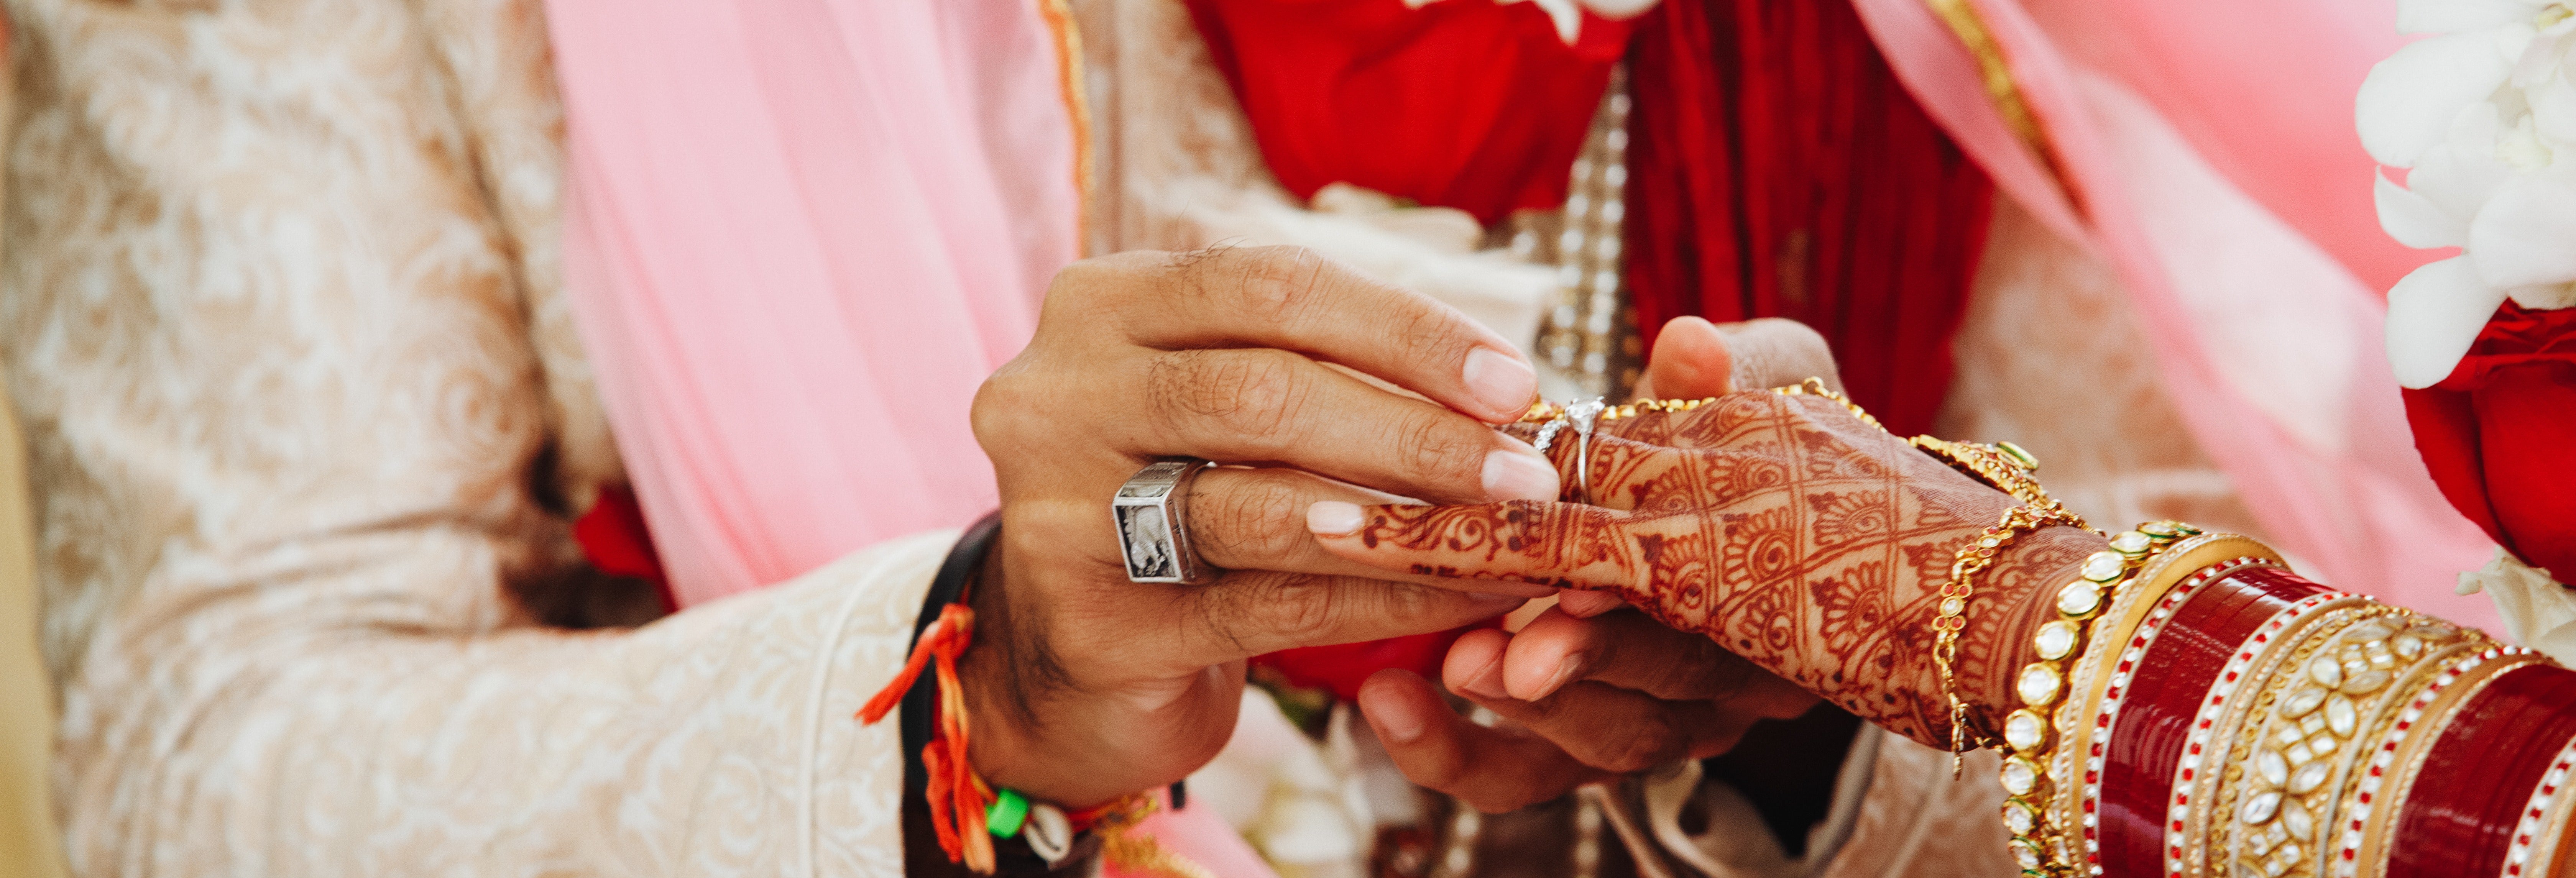 Casamento hindu: Case-se com o ritual tradicional!